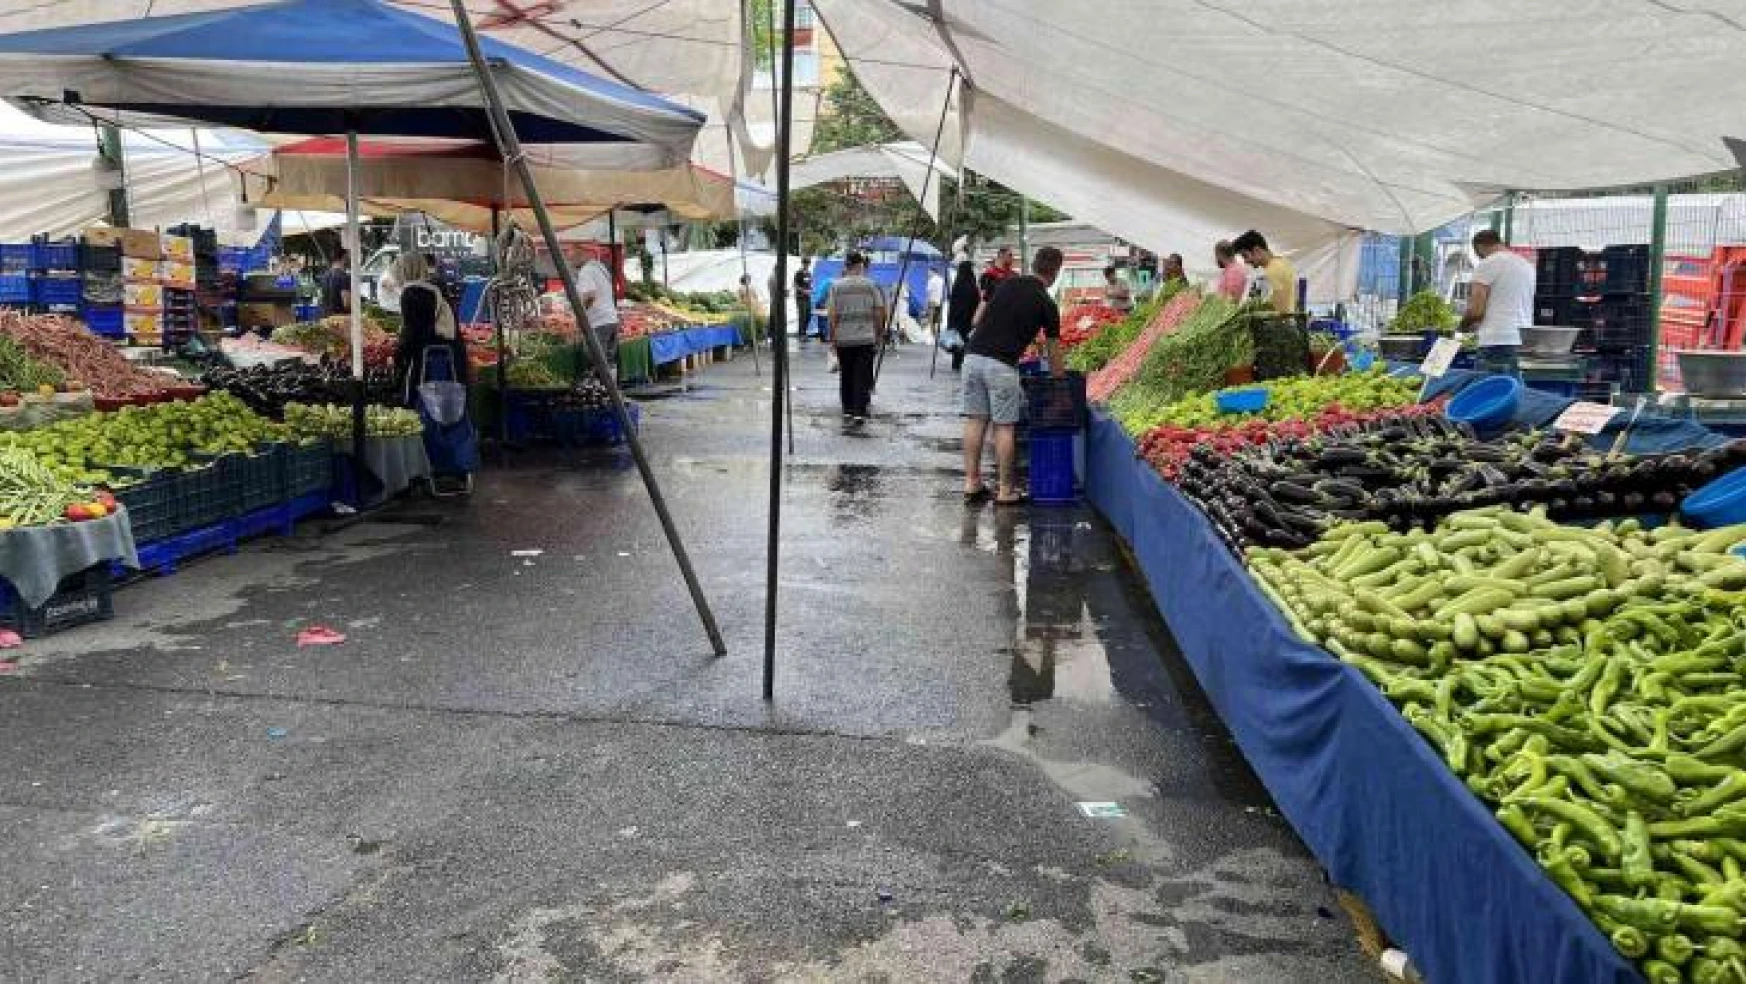 Sağanak yağışın etkisiyle semt pazarları boş kaldı